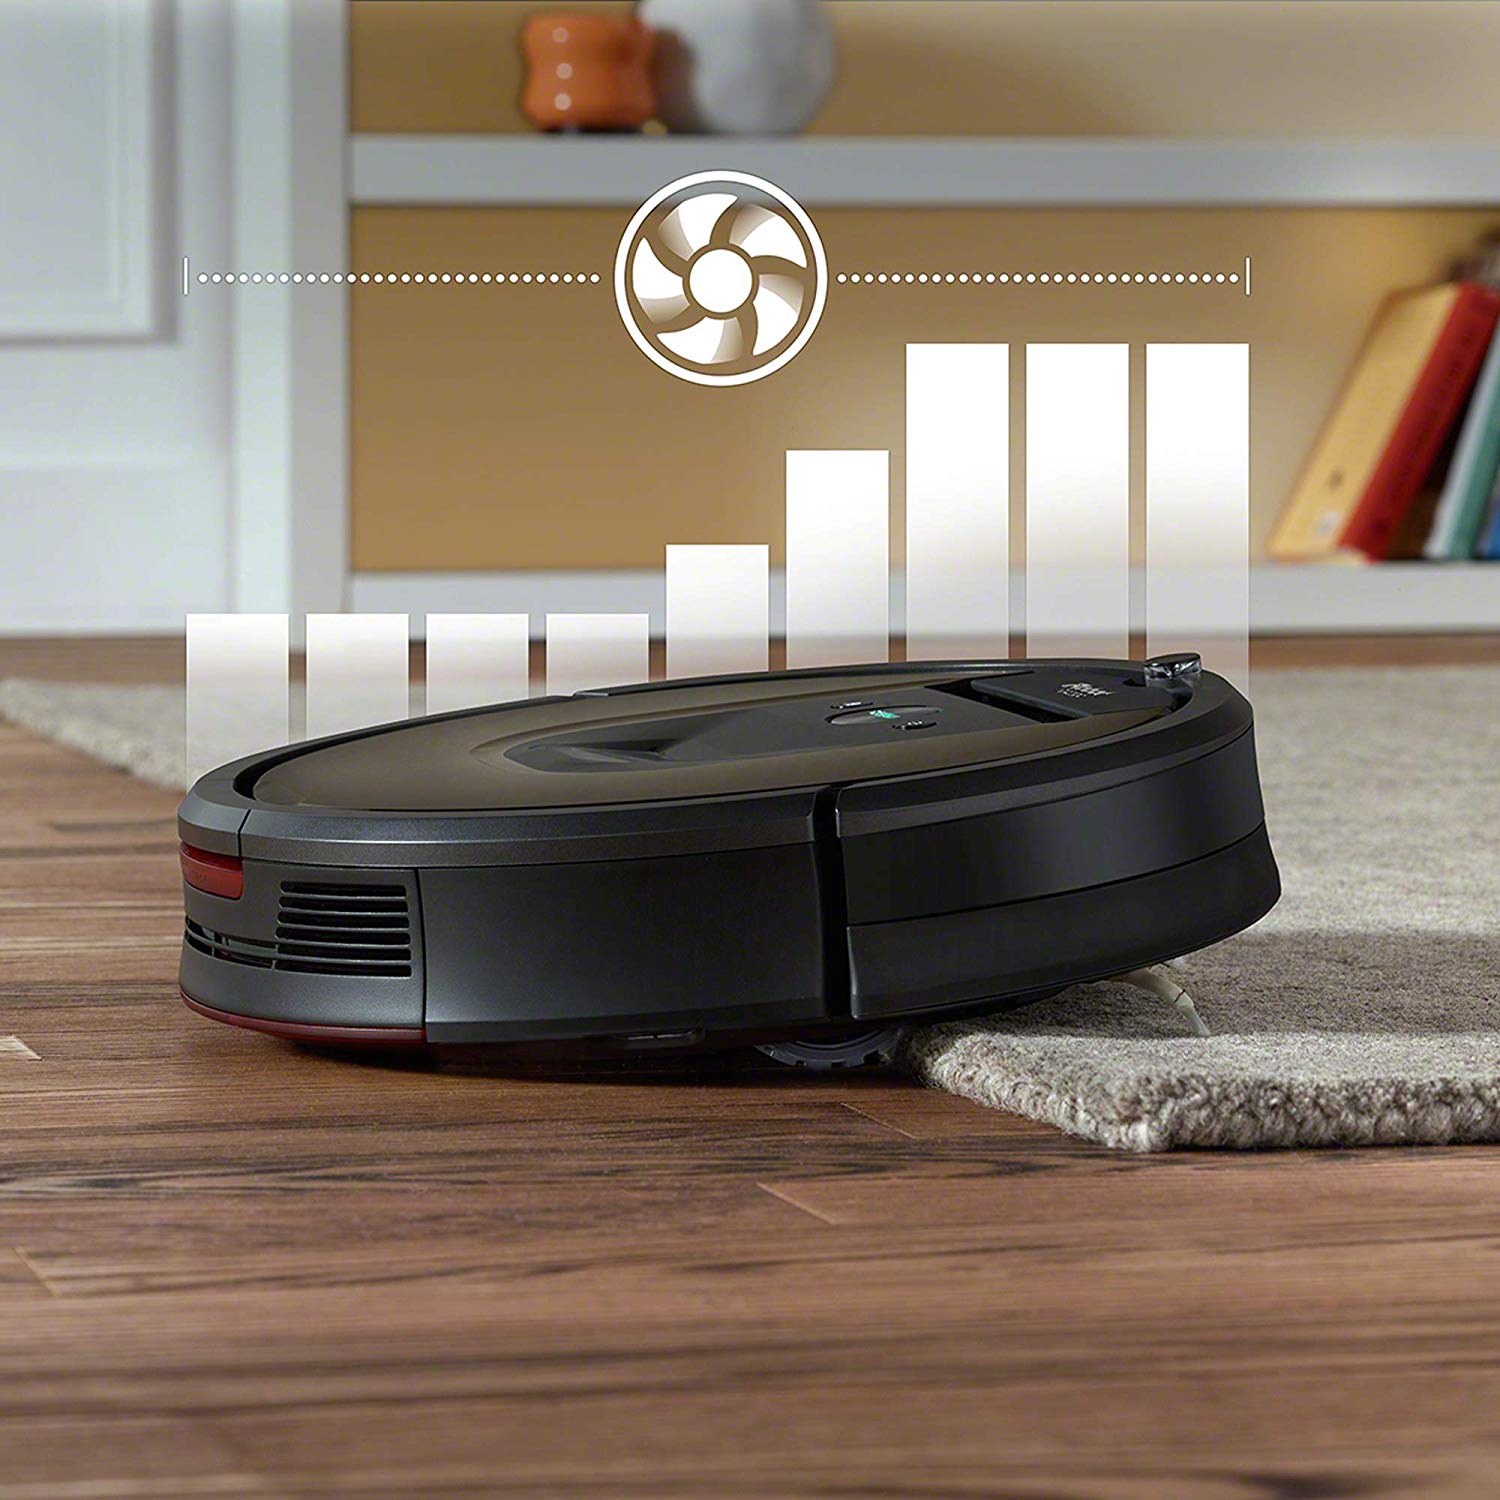 iRobot Roomba 980 robot vacuum